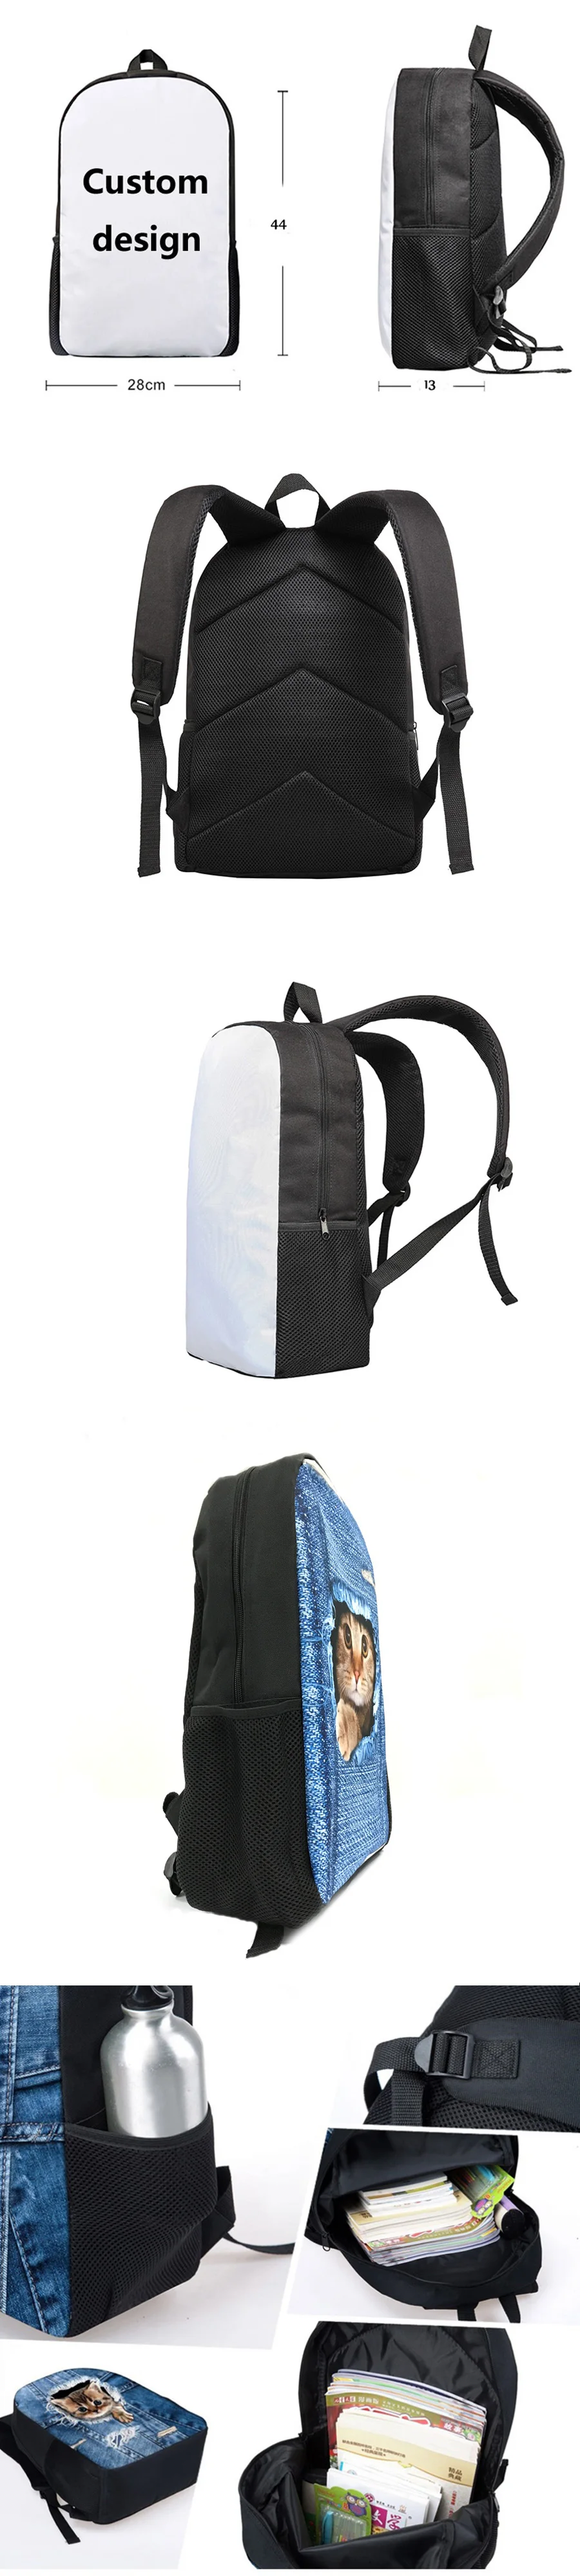 FORUDESIGNS/ранец с лошадью, школьные сумки, 3 комплекта/шт., школьный ортопедический рюкзак для детей, школьный ранец для девочек, mochilas Escolares